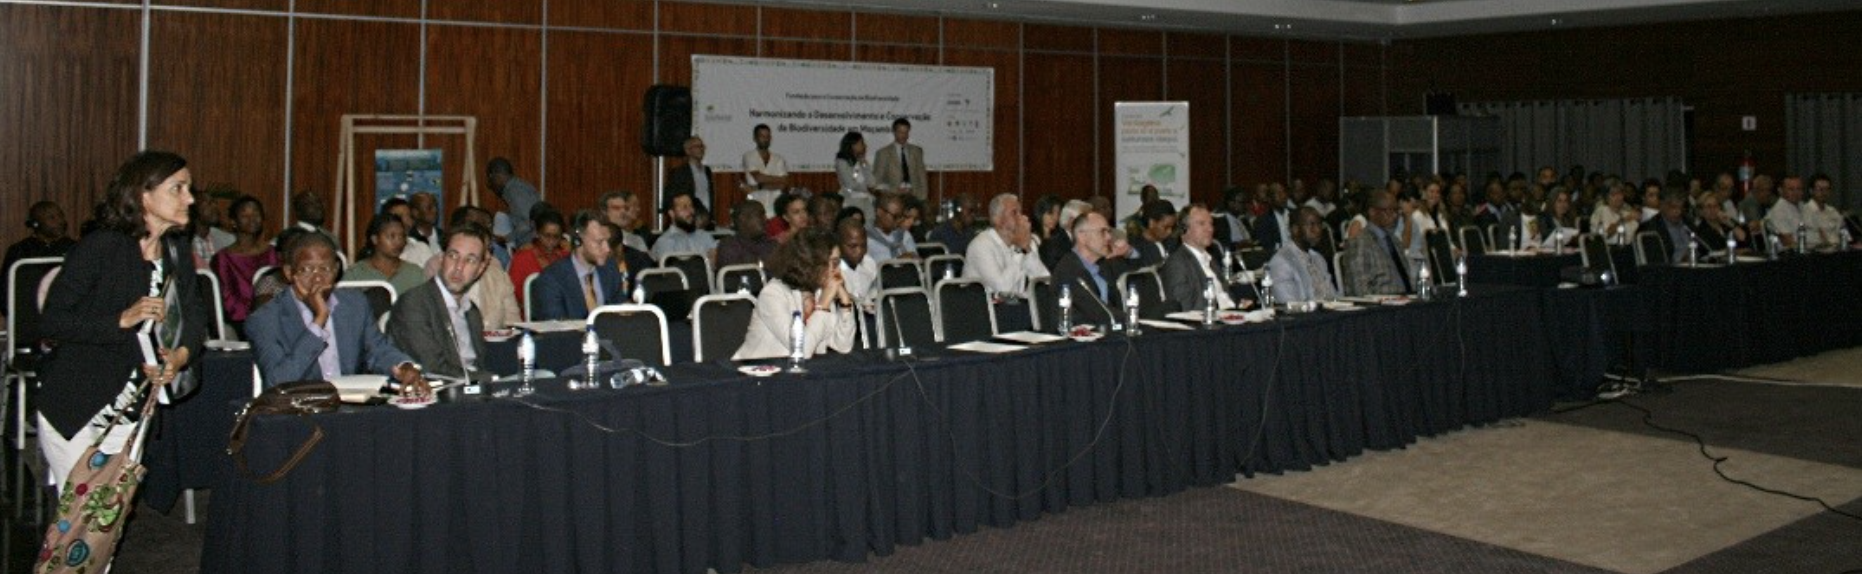 Mozambique forum